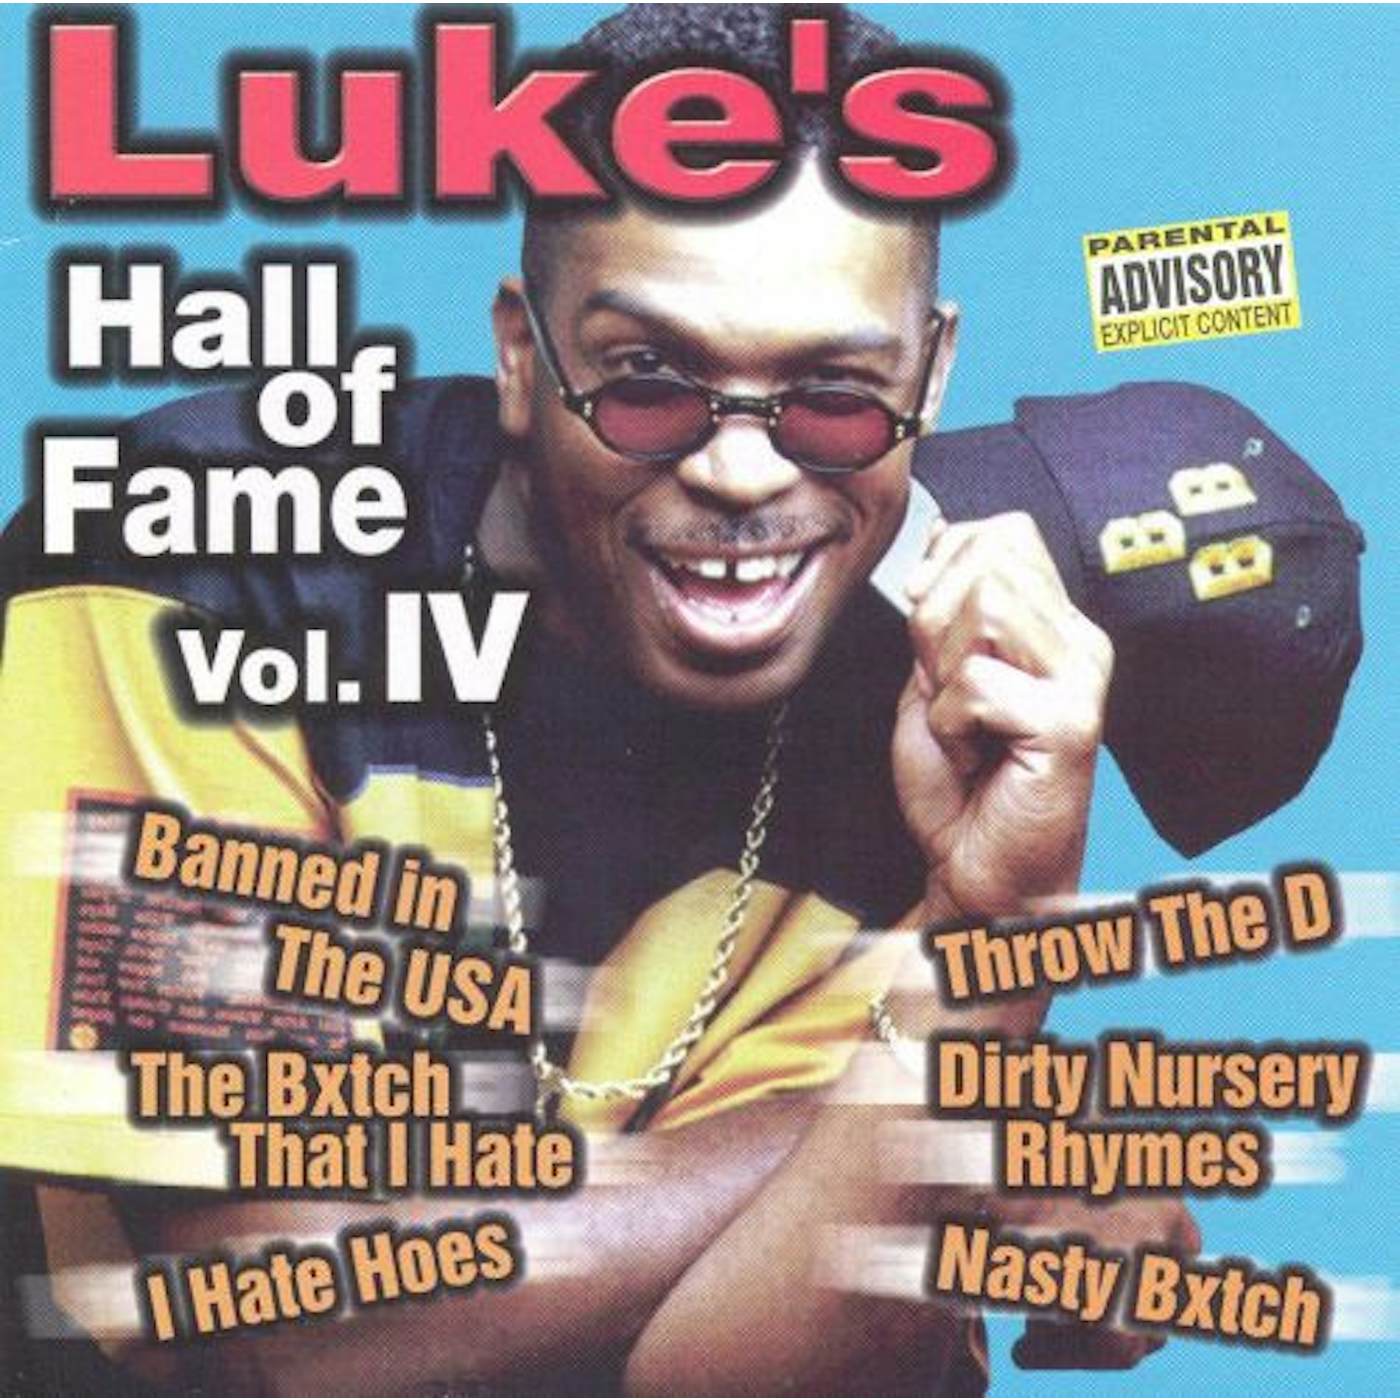 LUKE'S HALL OF FAME / VARIOUS Vinyl Record